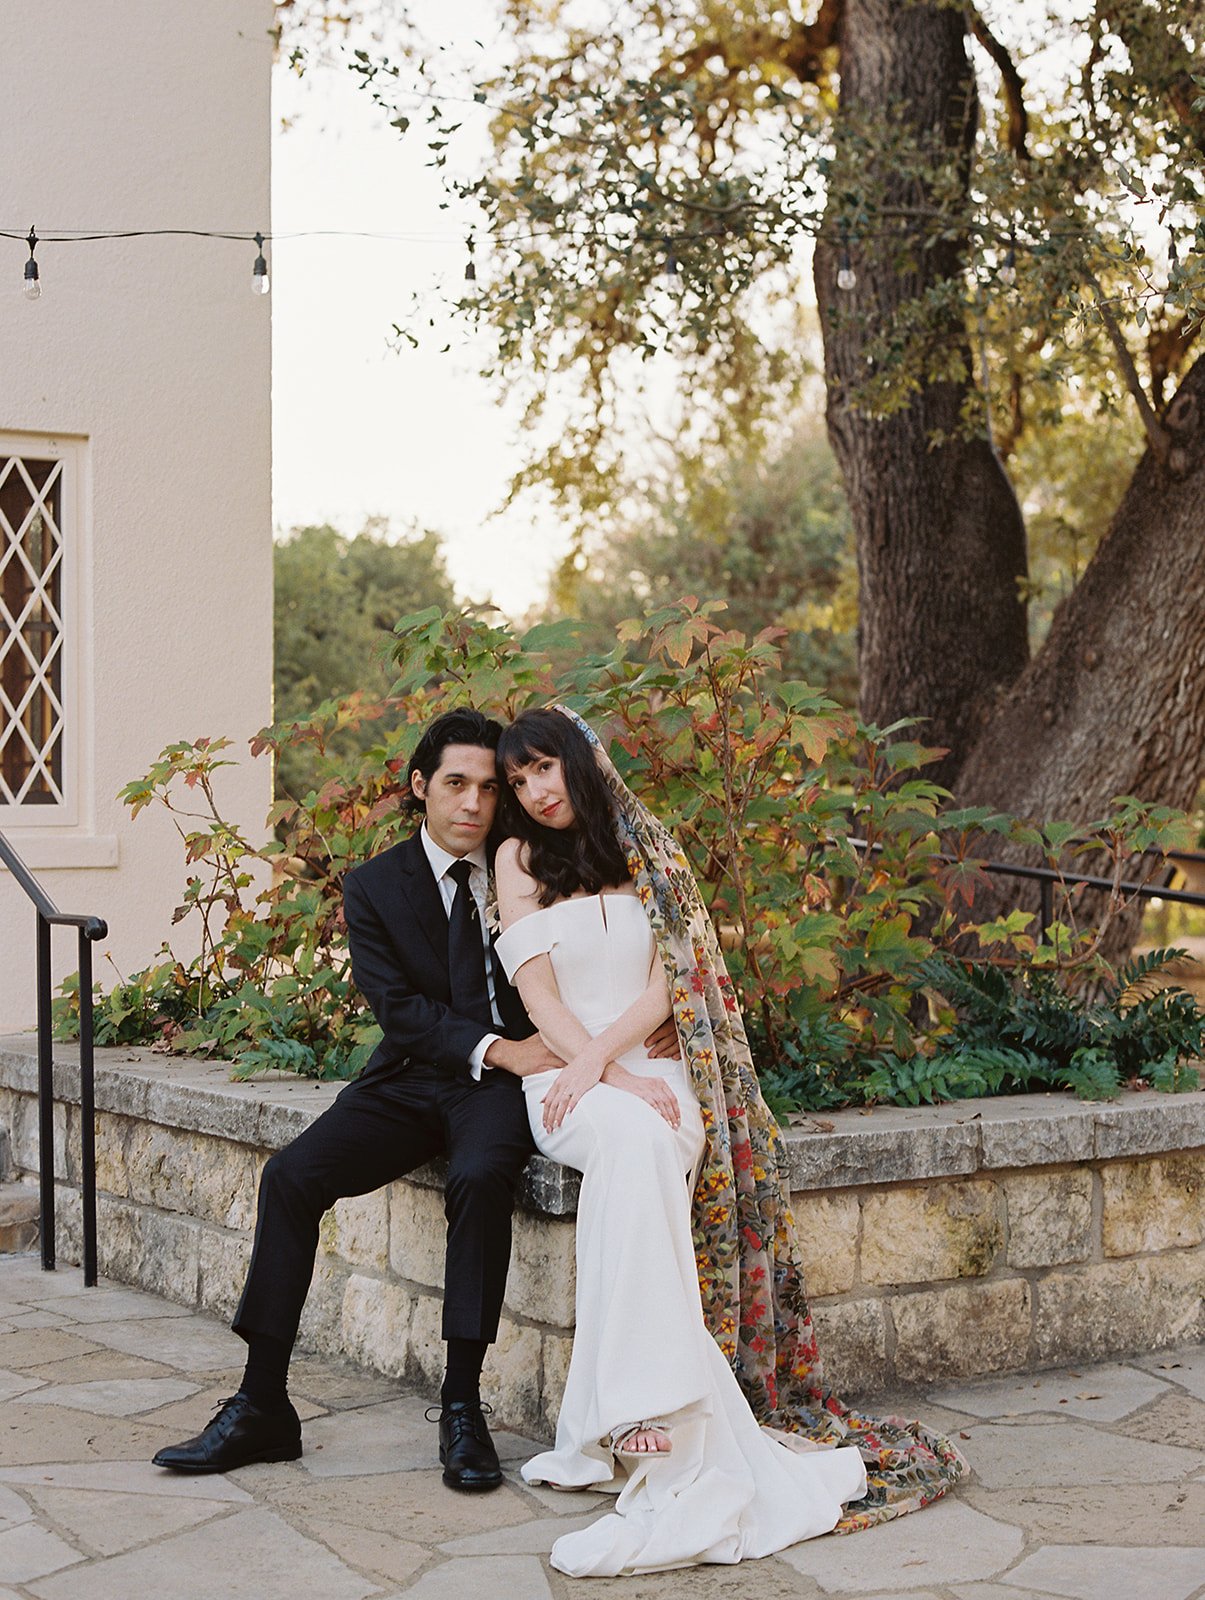 Best-Austin-Wedding-Photographers-Elopement-Film-35mm-Asheville-Santa-Barbara-Laguna-Gloria-42.jpg